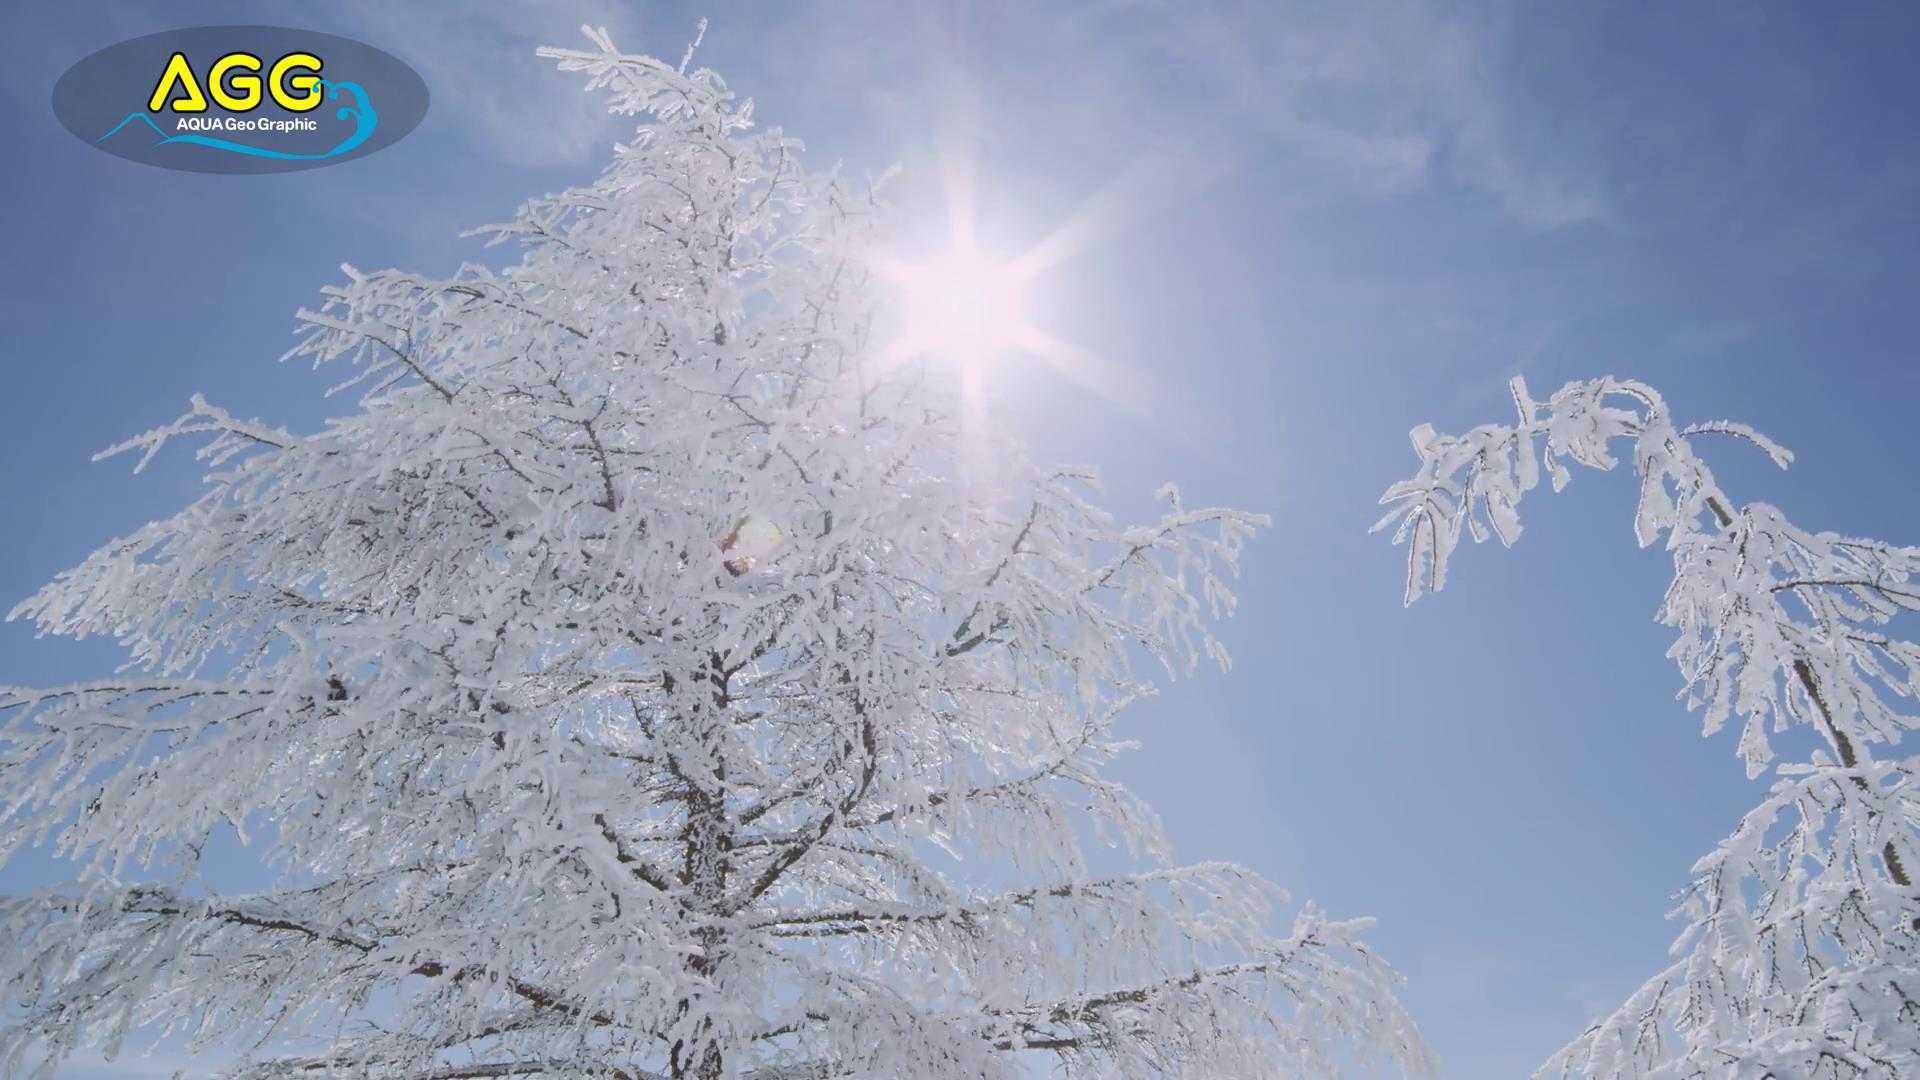 超唯美雪景摄影短片《那片澄澈之地》